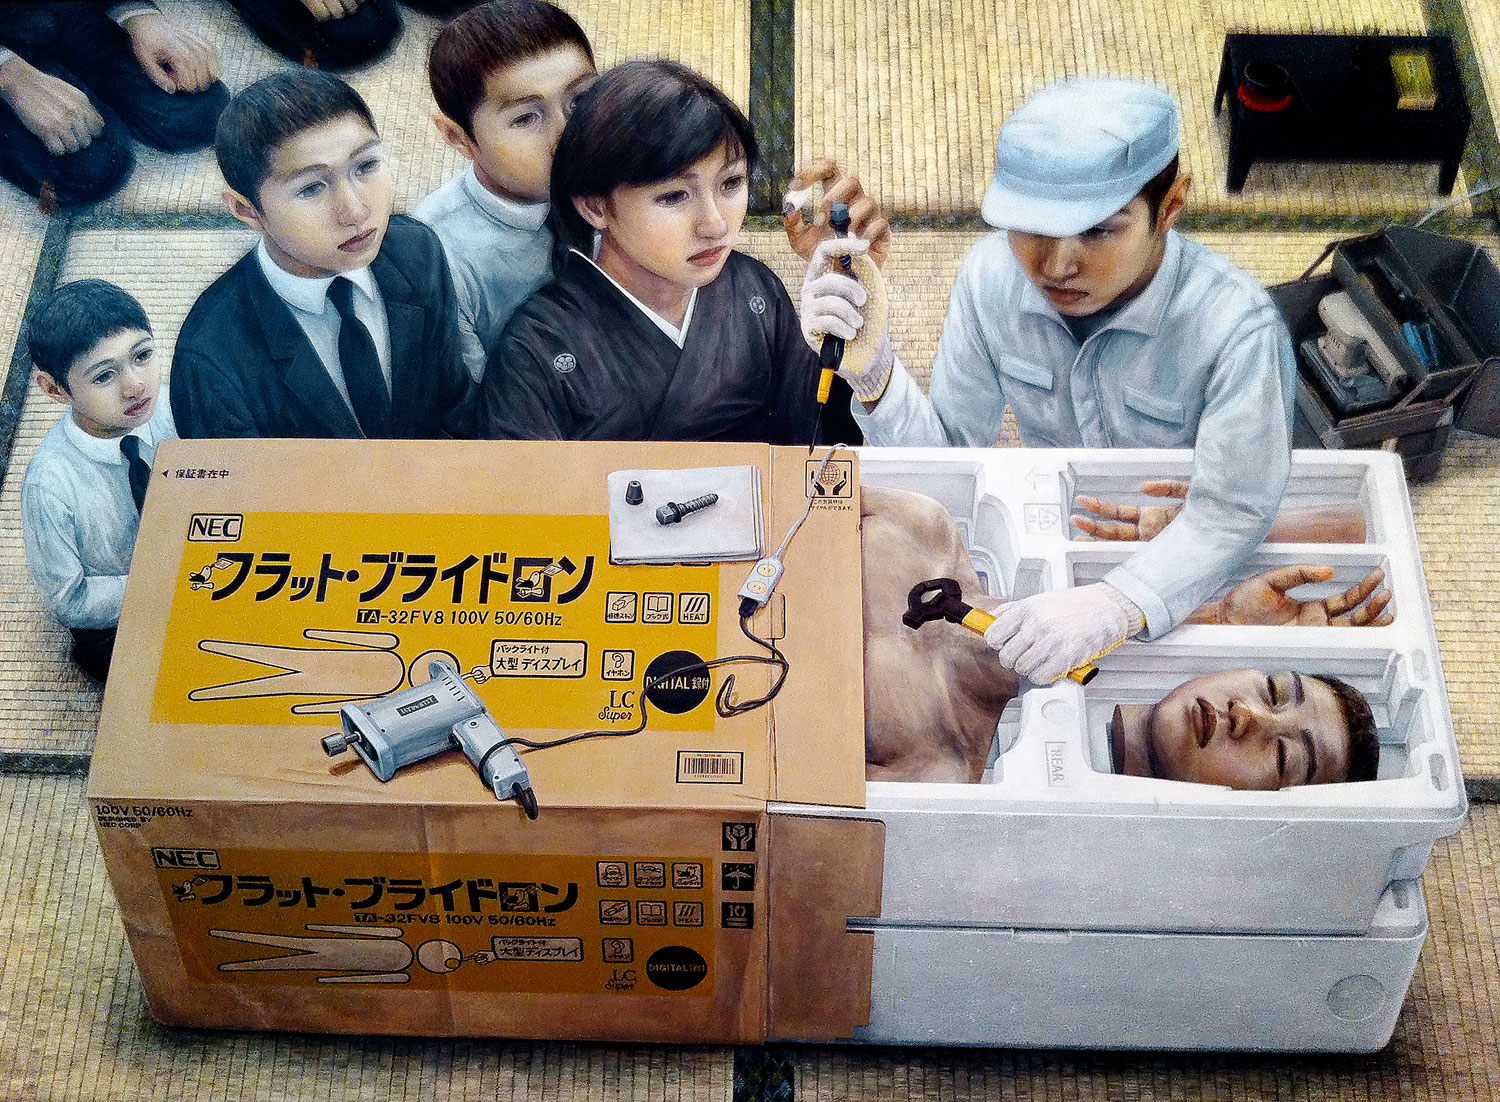 Ishida Tetsuya festményei az elgépiesedett társadalomra utalnak